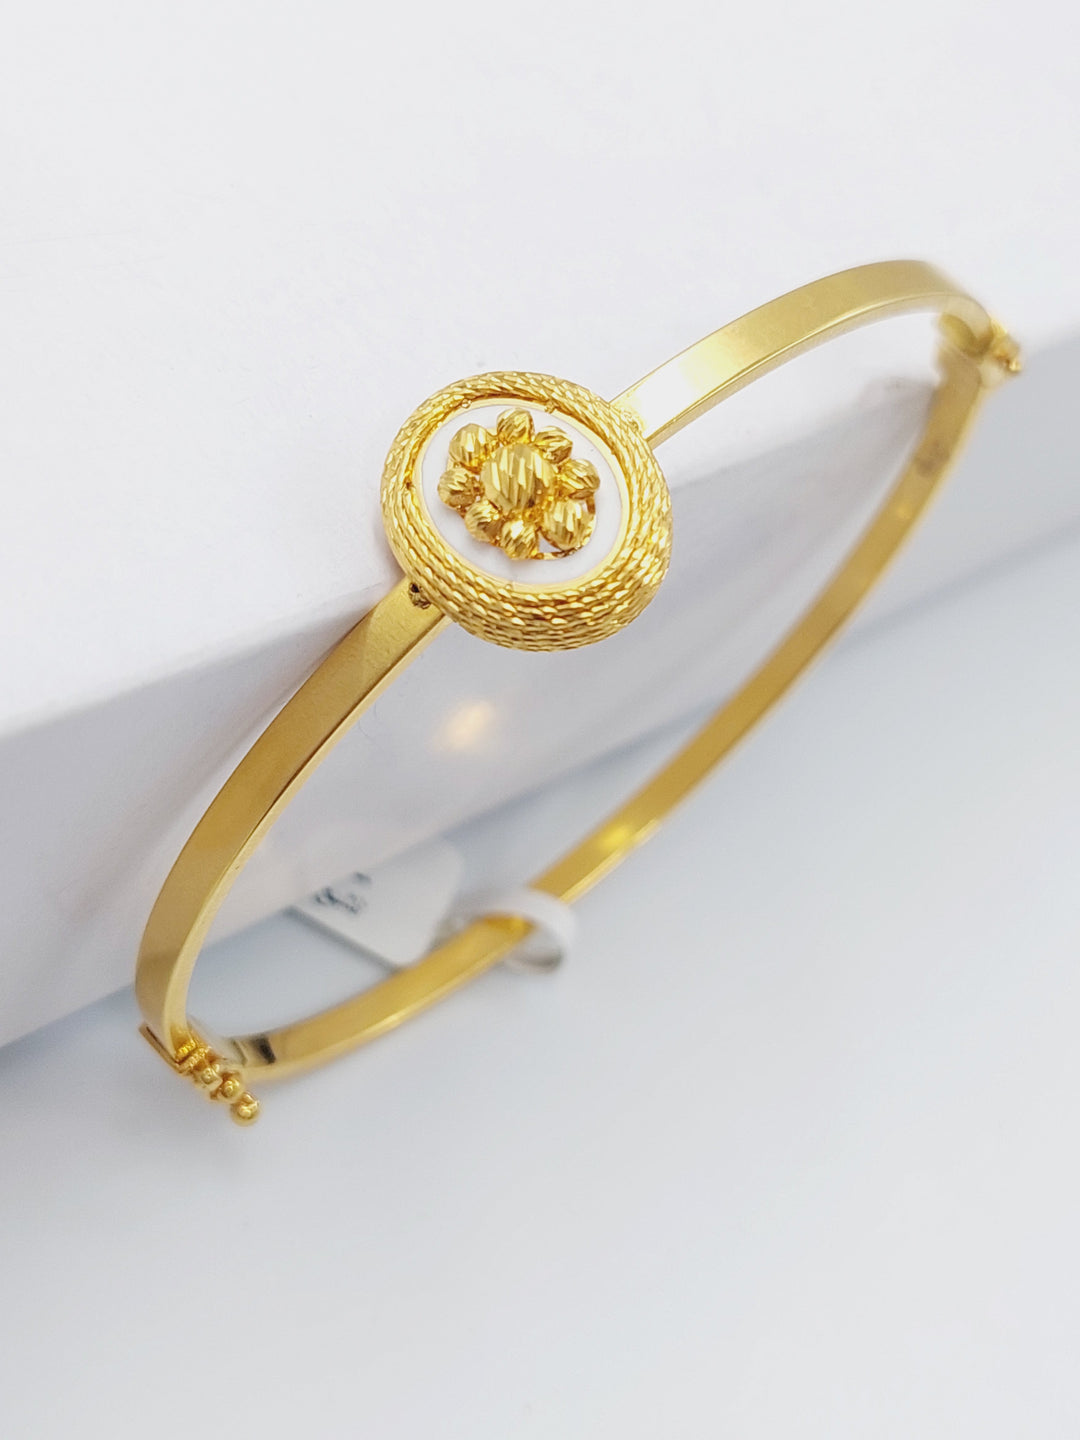 21K Gold Figaro Fancy Bangle Bracelet by Saeed Jewelry - Image 2